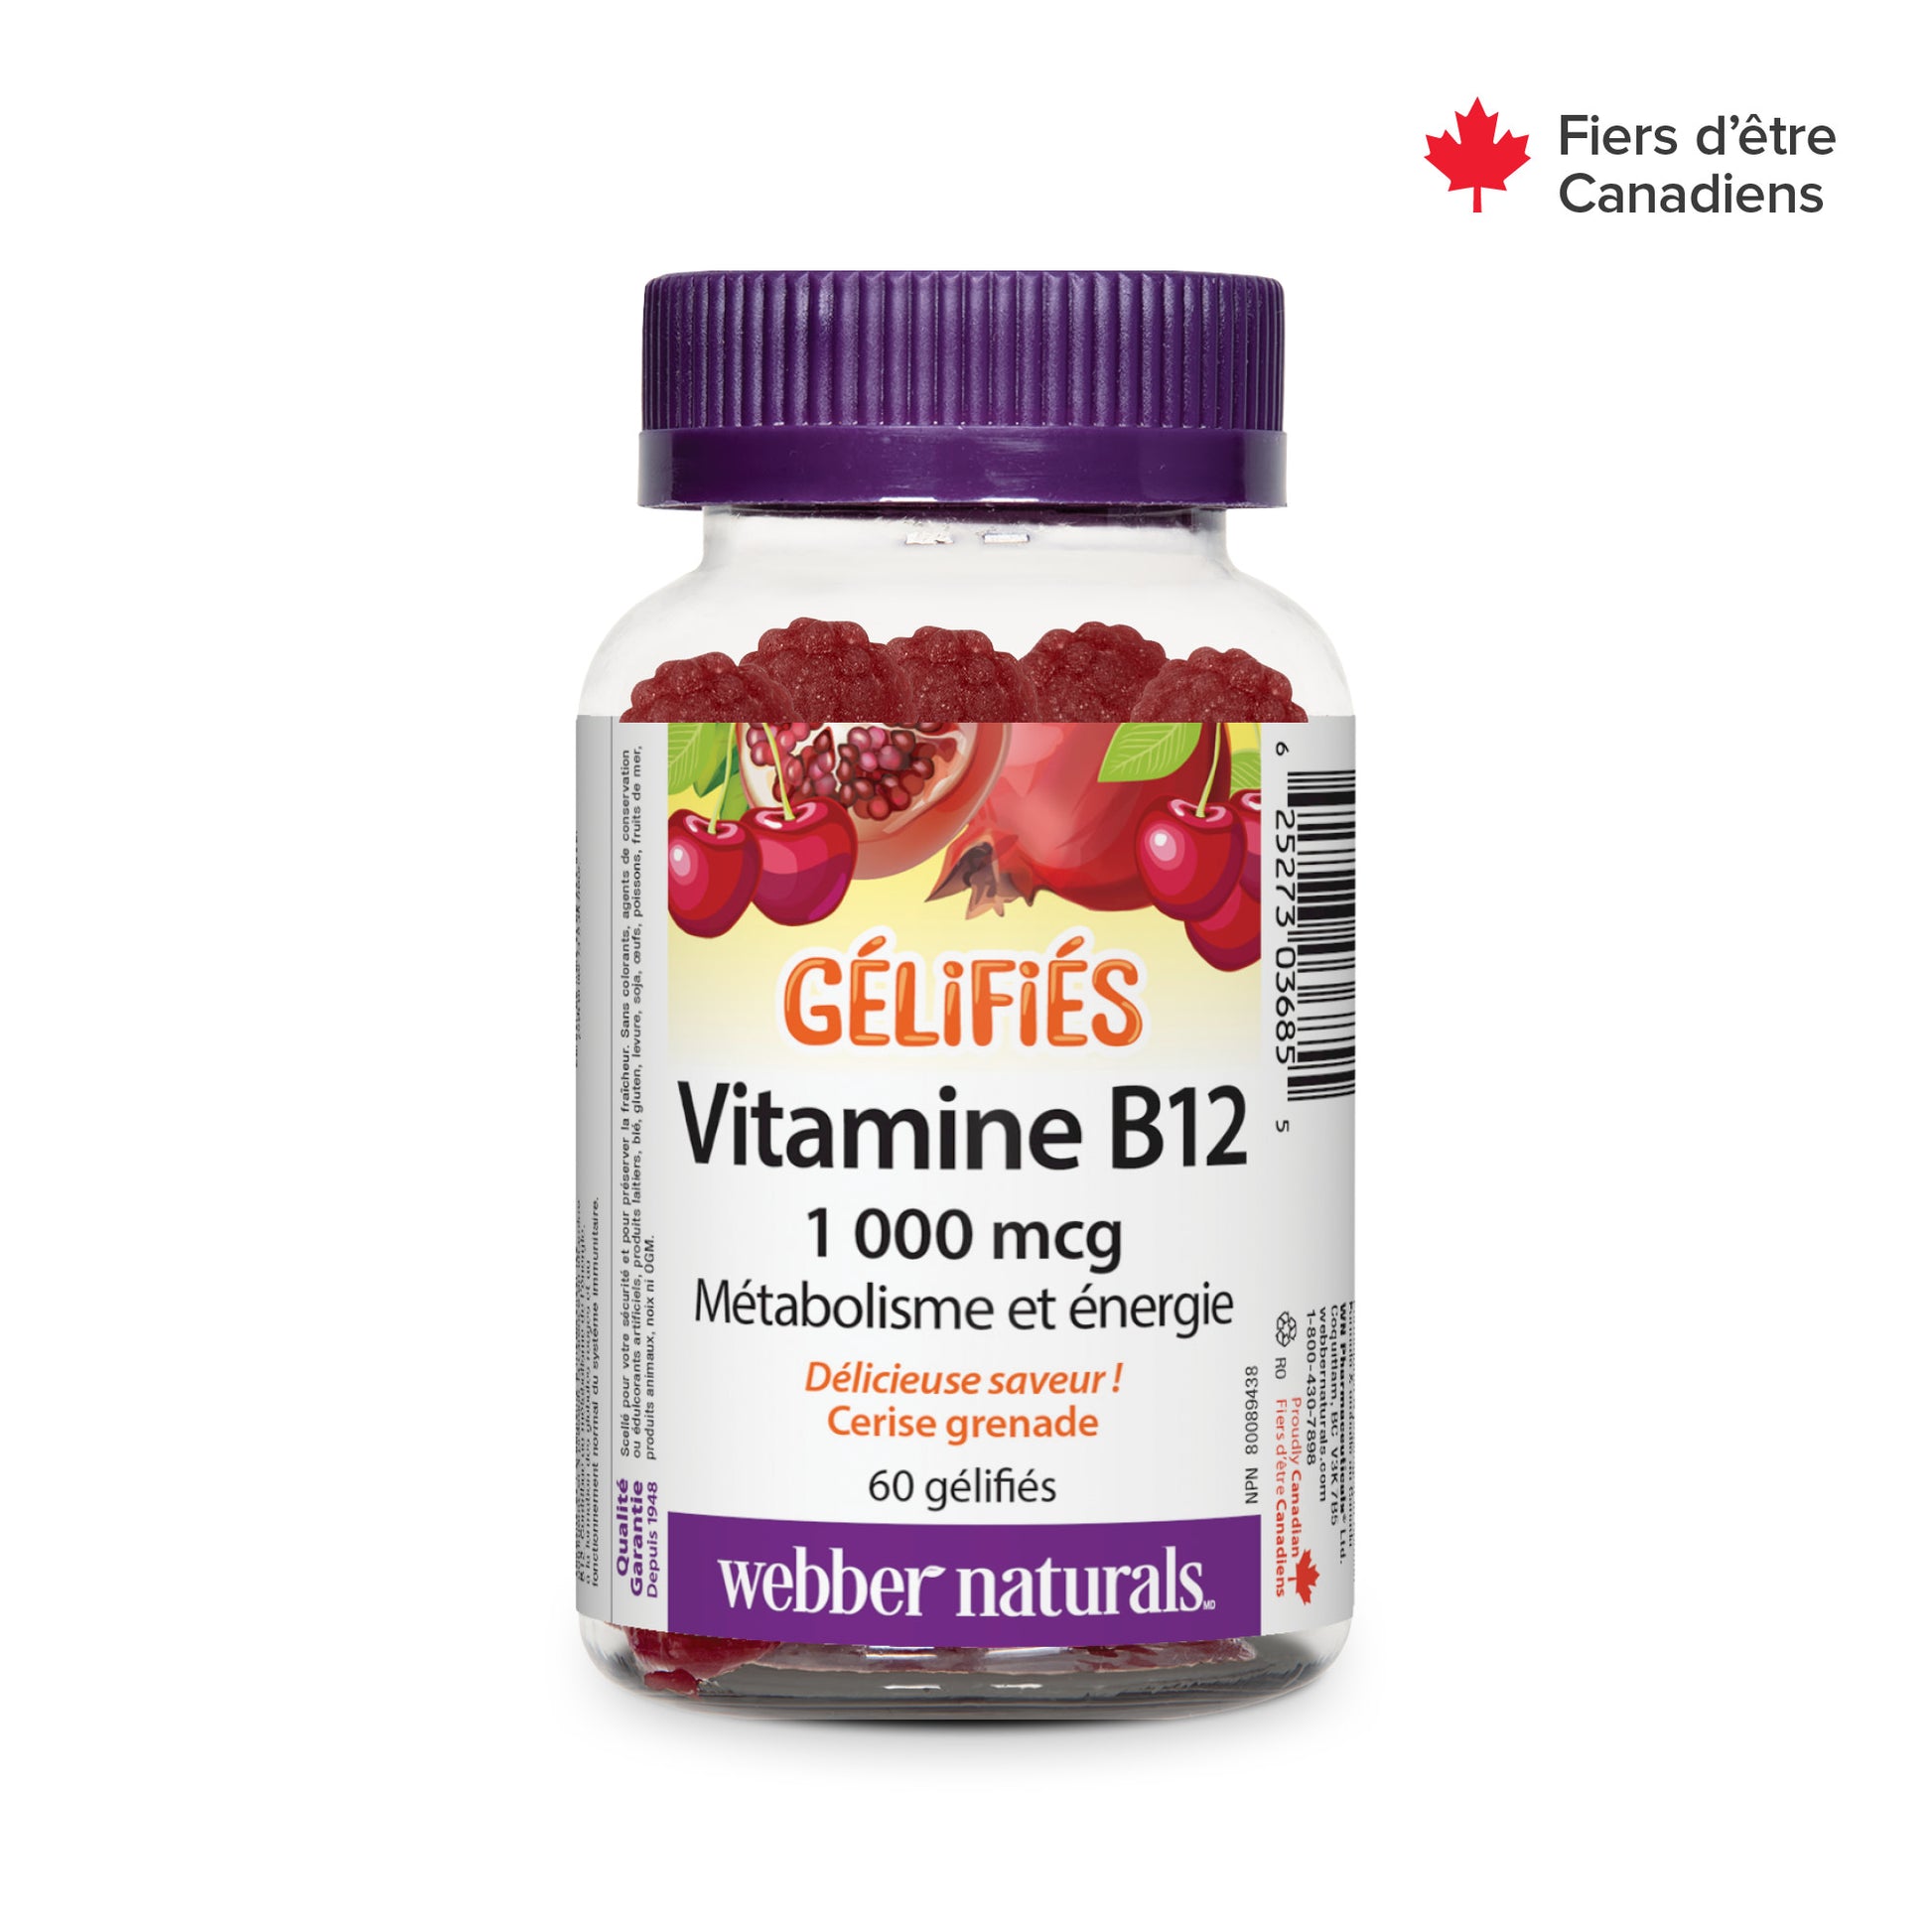 Vitamin B12 1000 mcg Cherry Pomegranate for Webber Naturals|v|hi-res|WN3685